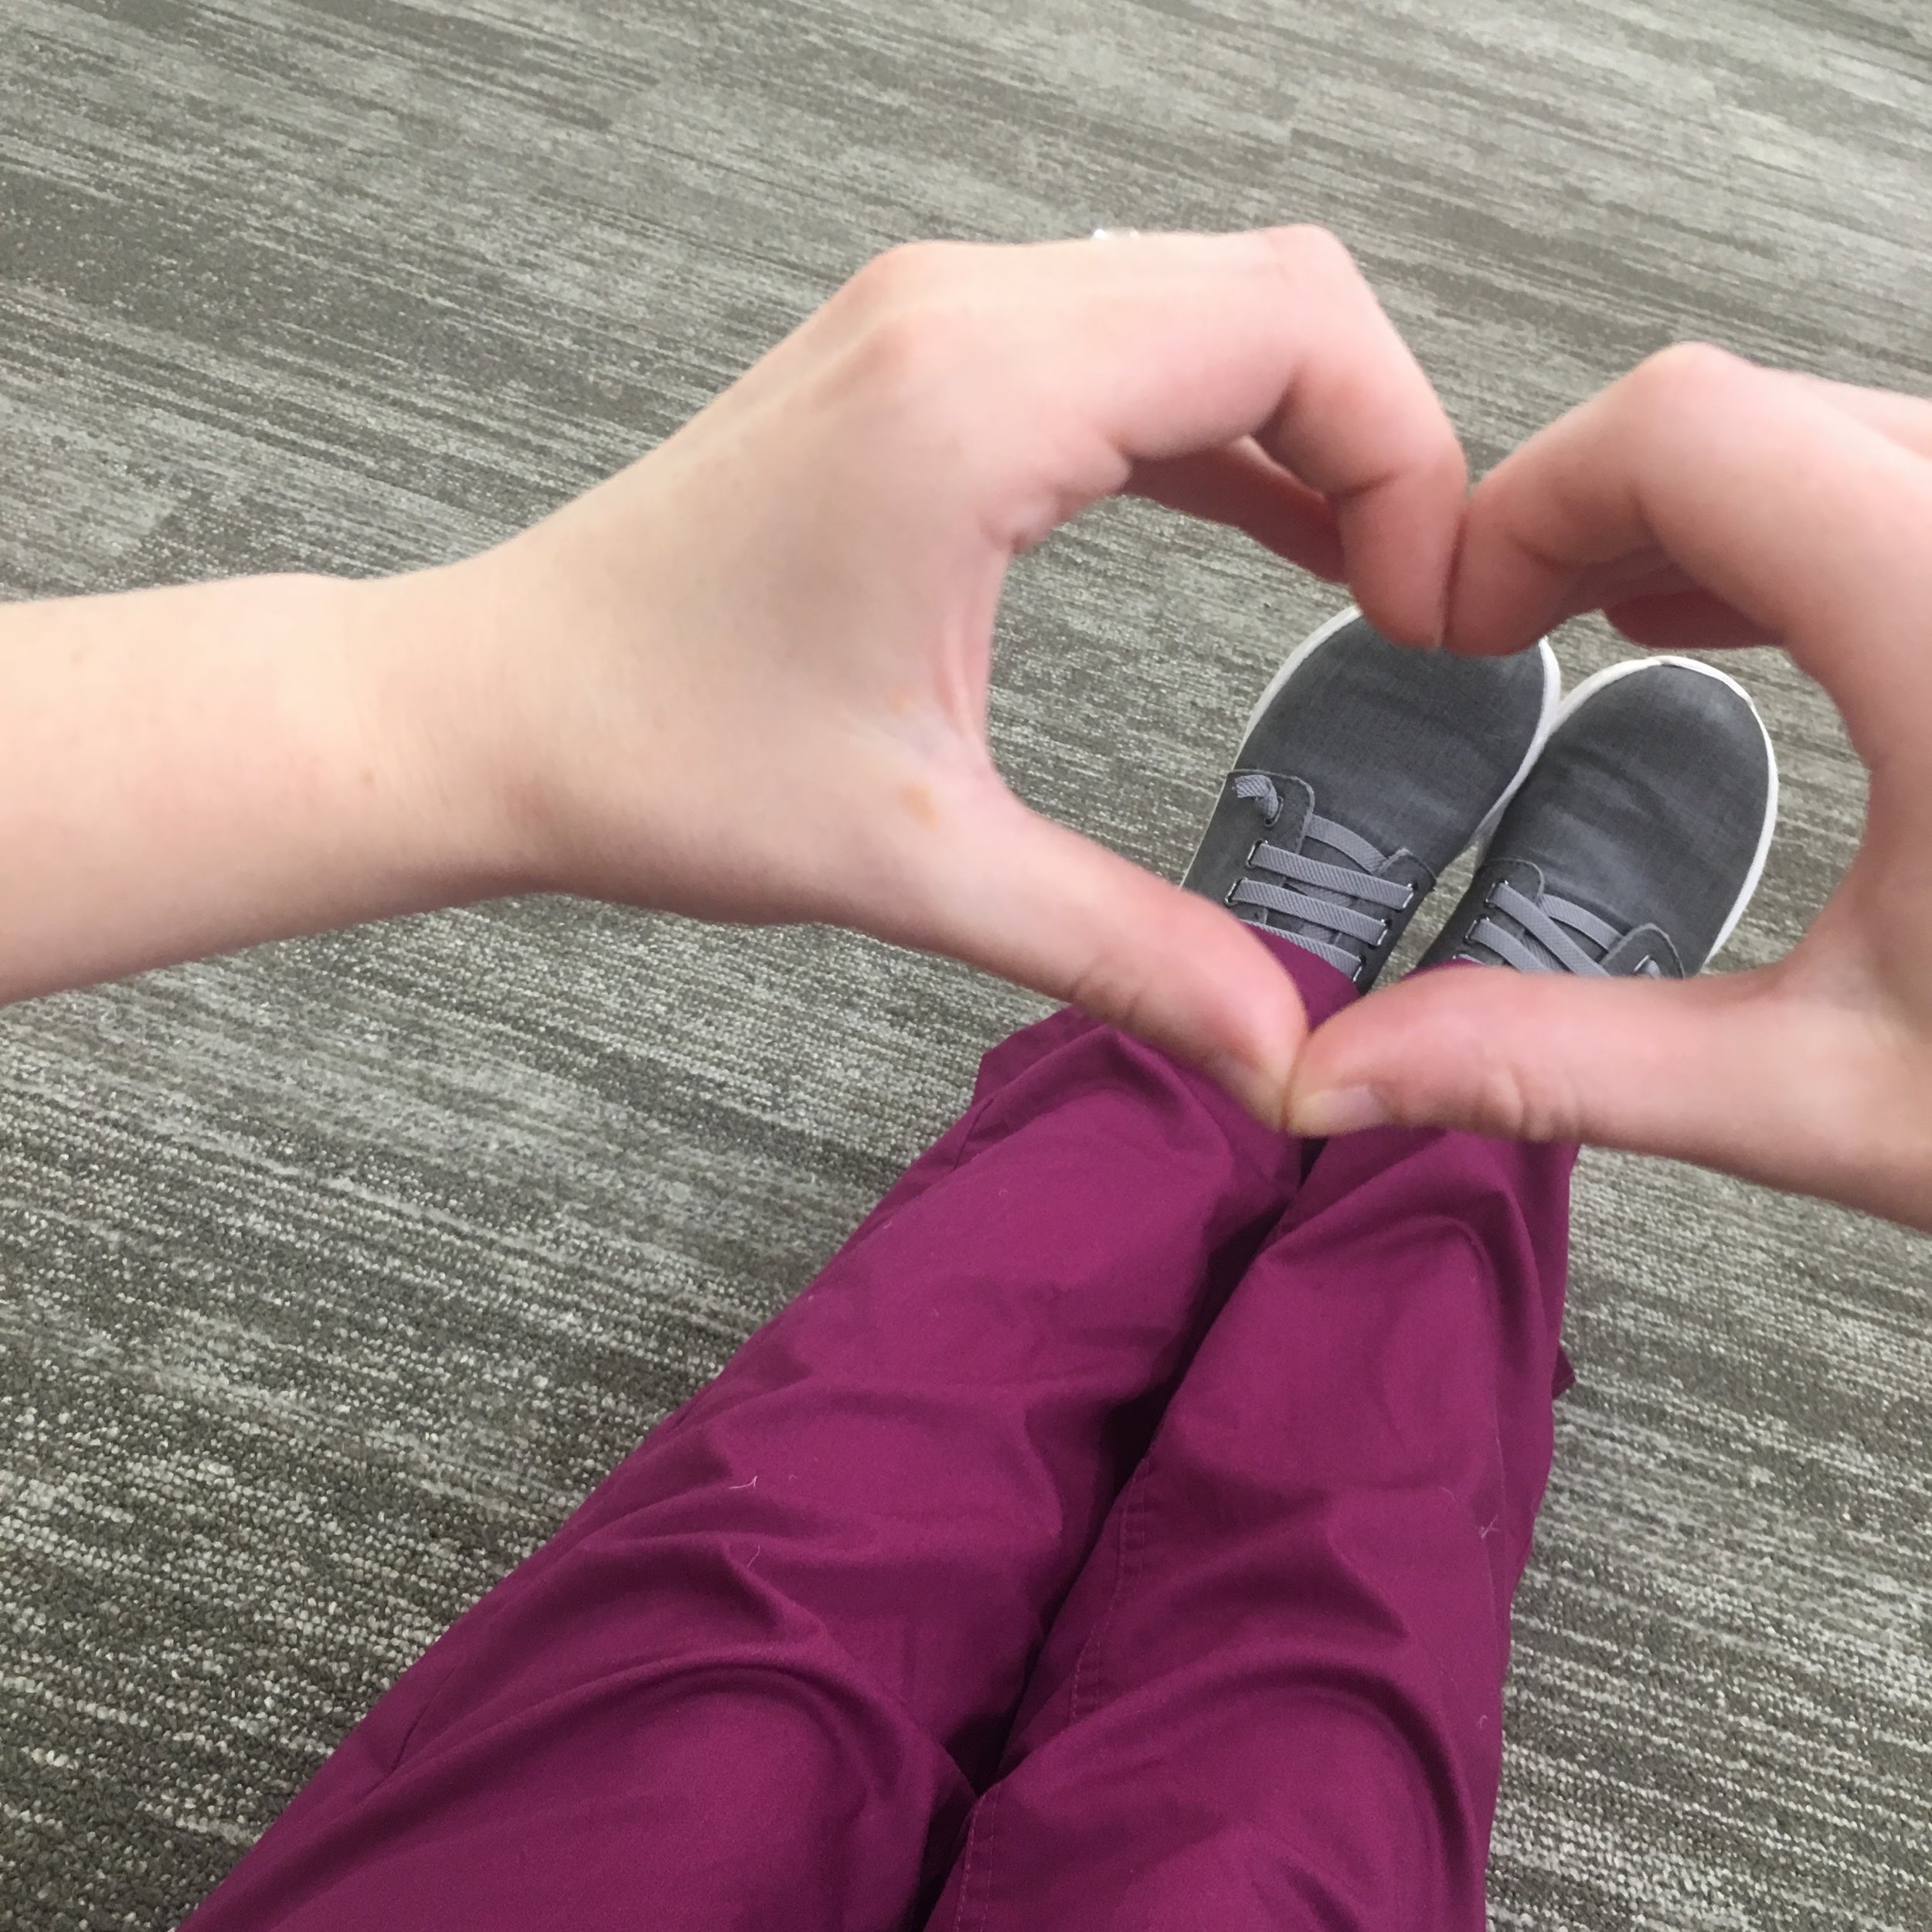 nurse mates align shoes